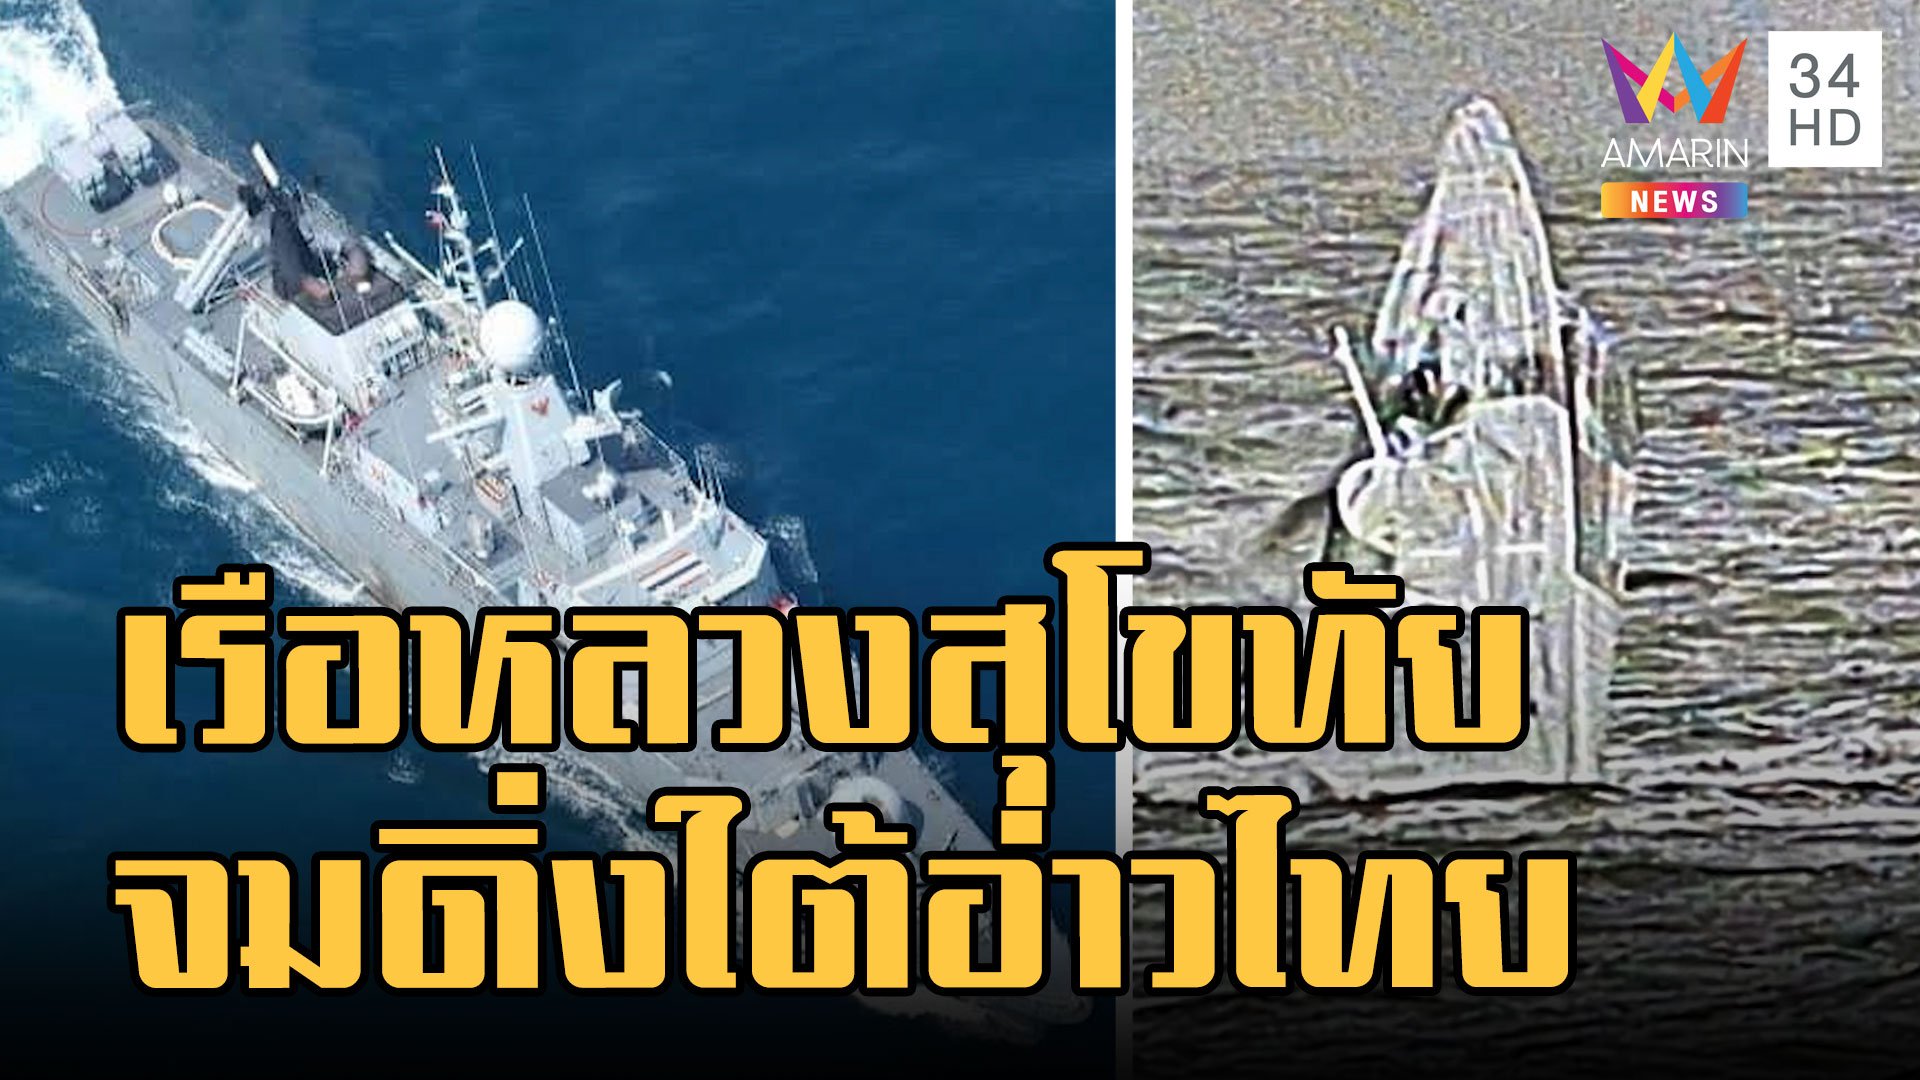 เรือหลวงสุโขทัย ล่มกลางทะเลอ่าวไทย ลุยช่วยกำลังพลร้อยนาย | ข่าวอรุณอมรินทร์ | 19 ธ.ค. 65 | AMARIN TVHD34